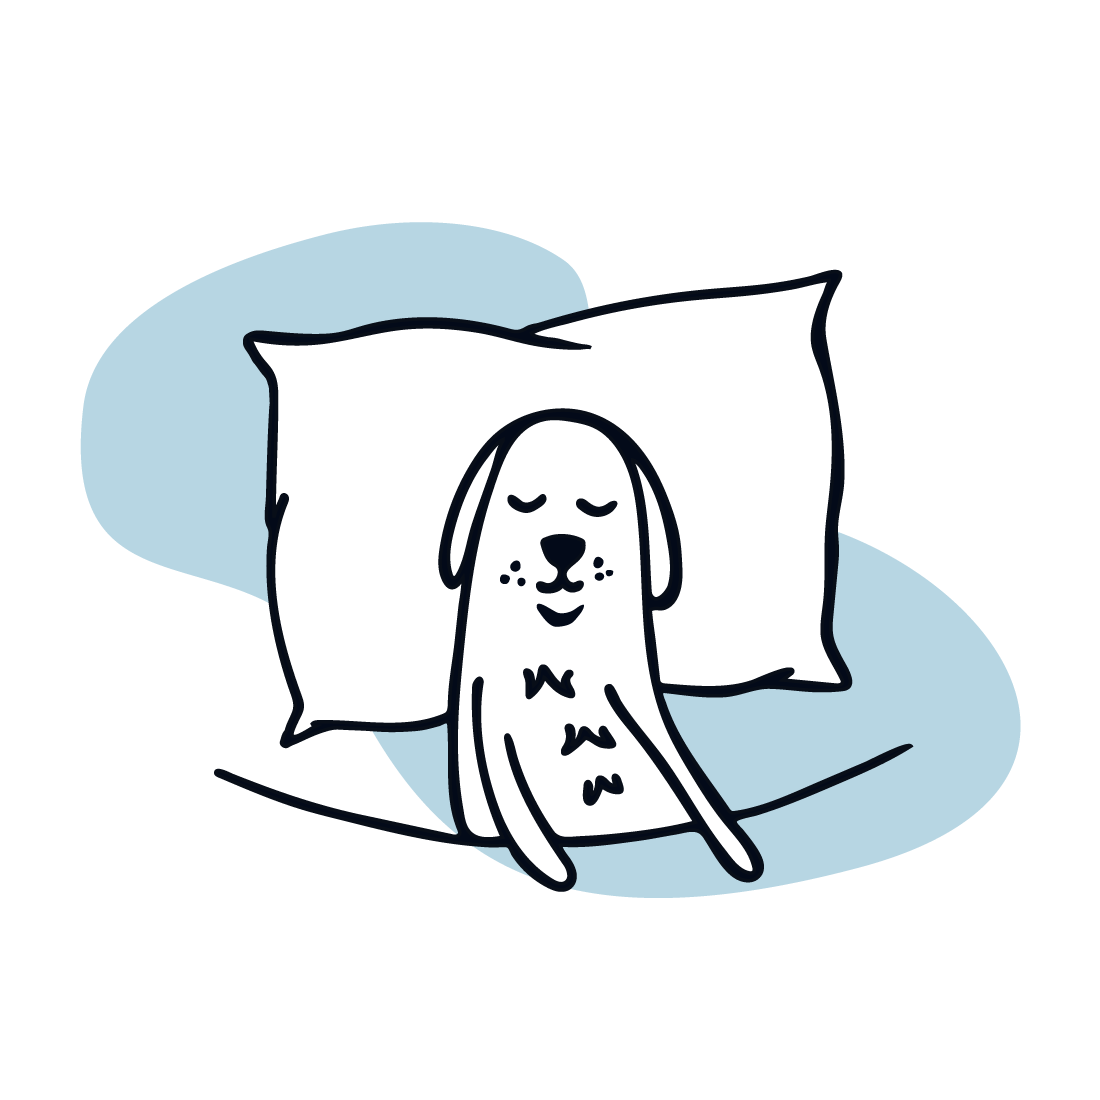 Icono de un perro caricaturizado durmiendo en una cama tranquilamente.